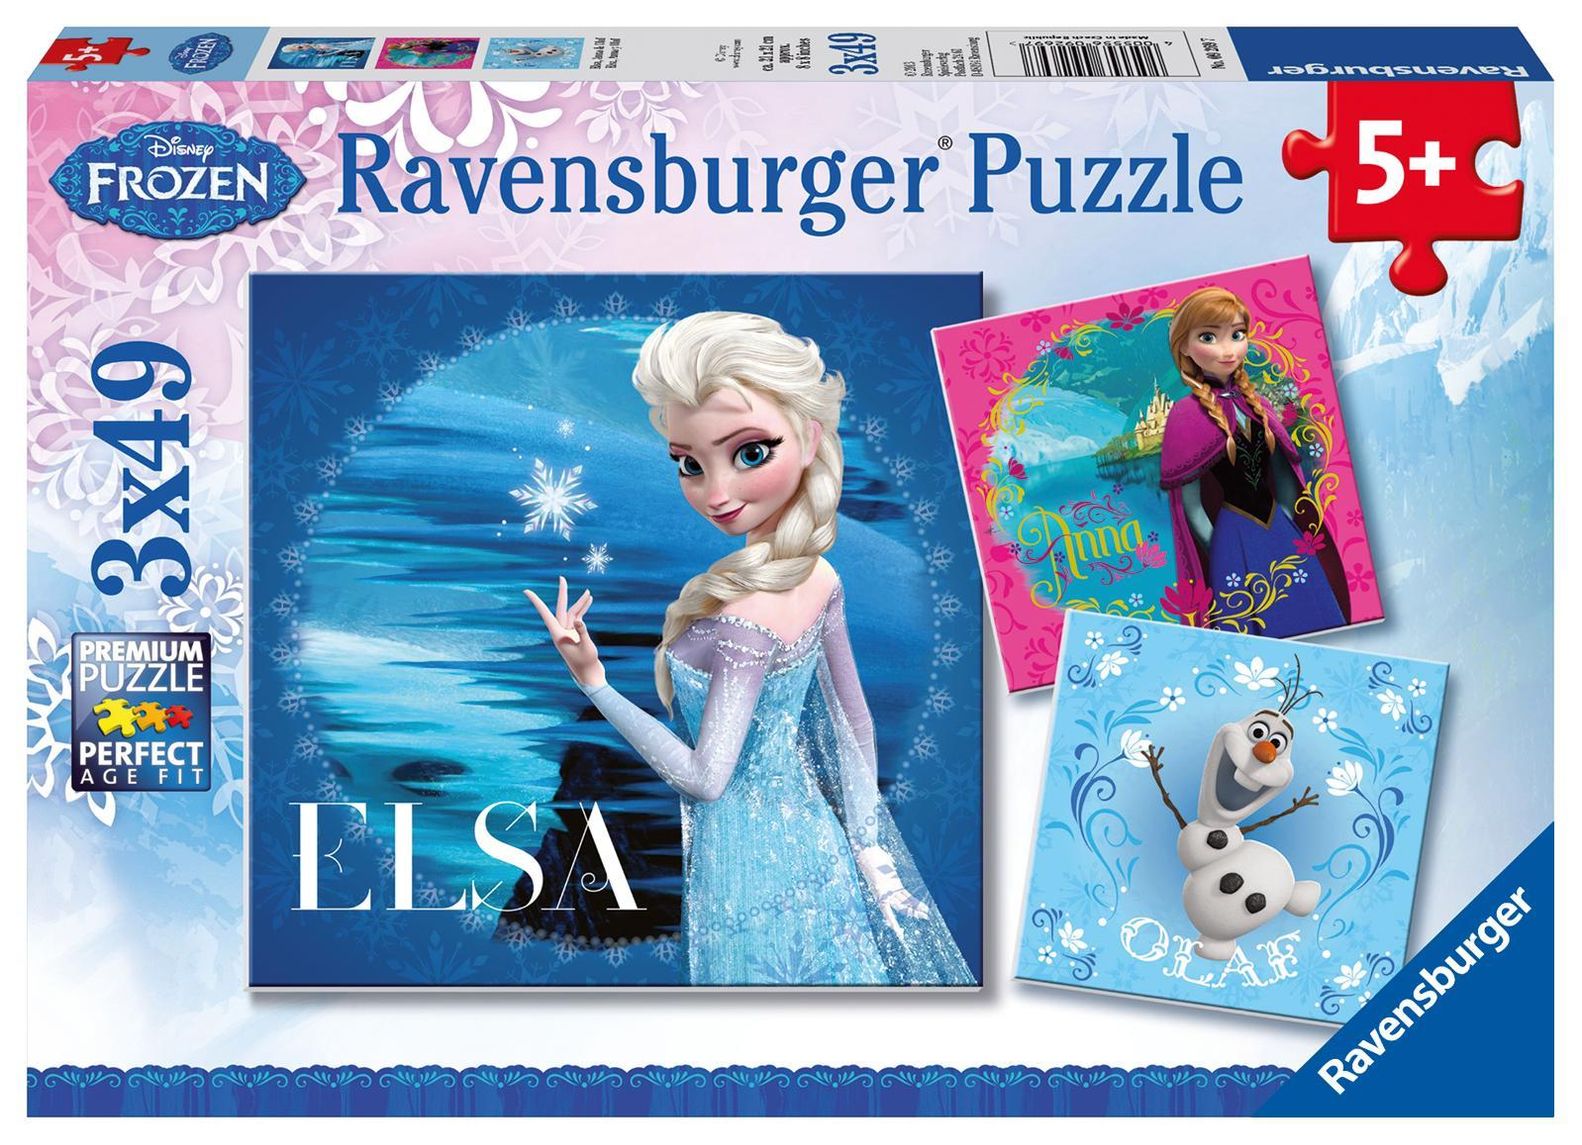 Ravensburger Kinderpuzzle - 09269 Elsa, Anna & Olaf - Puzzle für Kinder ab  5 Jahren, Disney Frozen Puzzle mit 3x49 Teile | Weltbild.ch